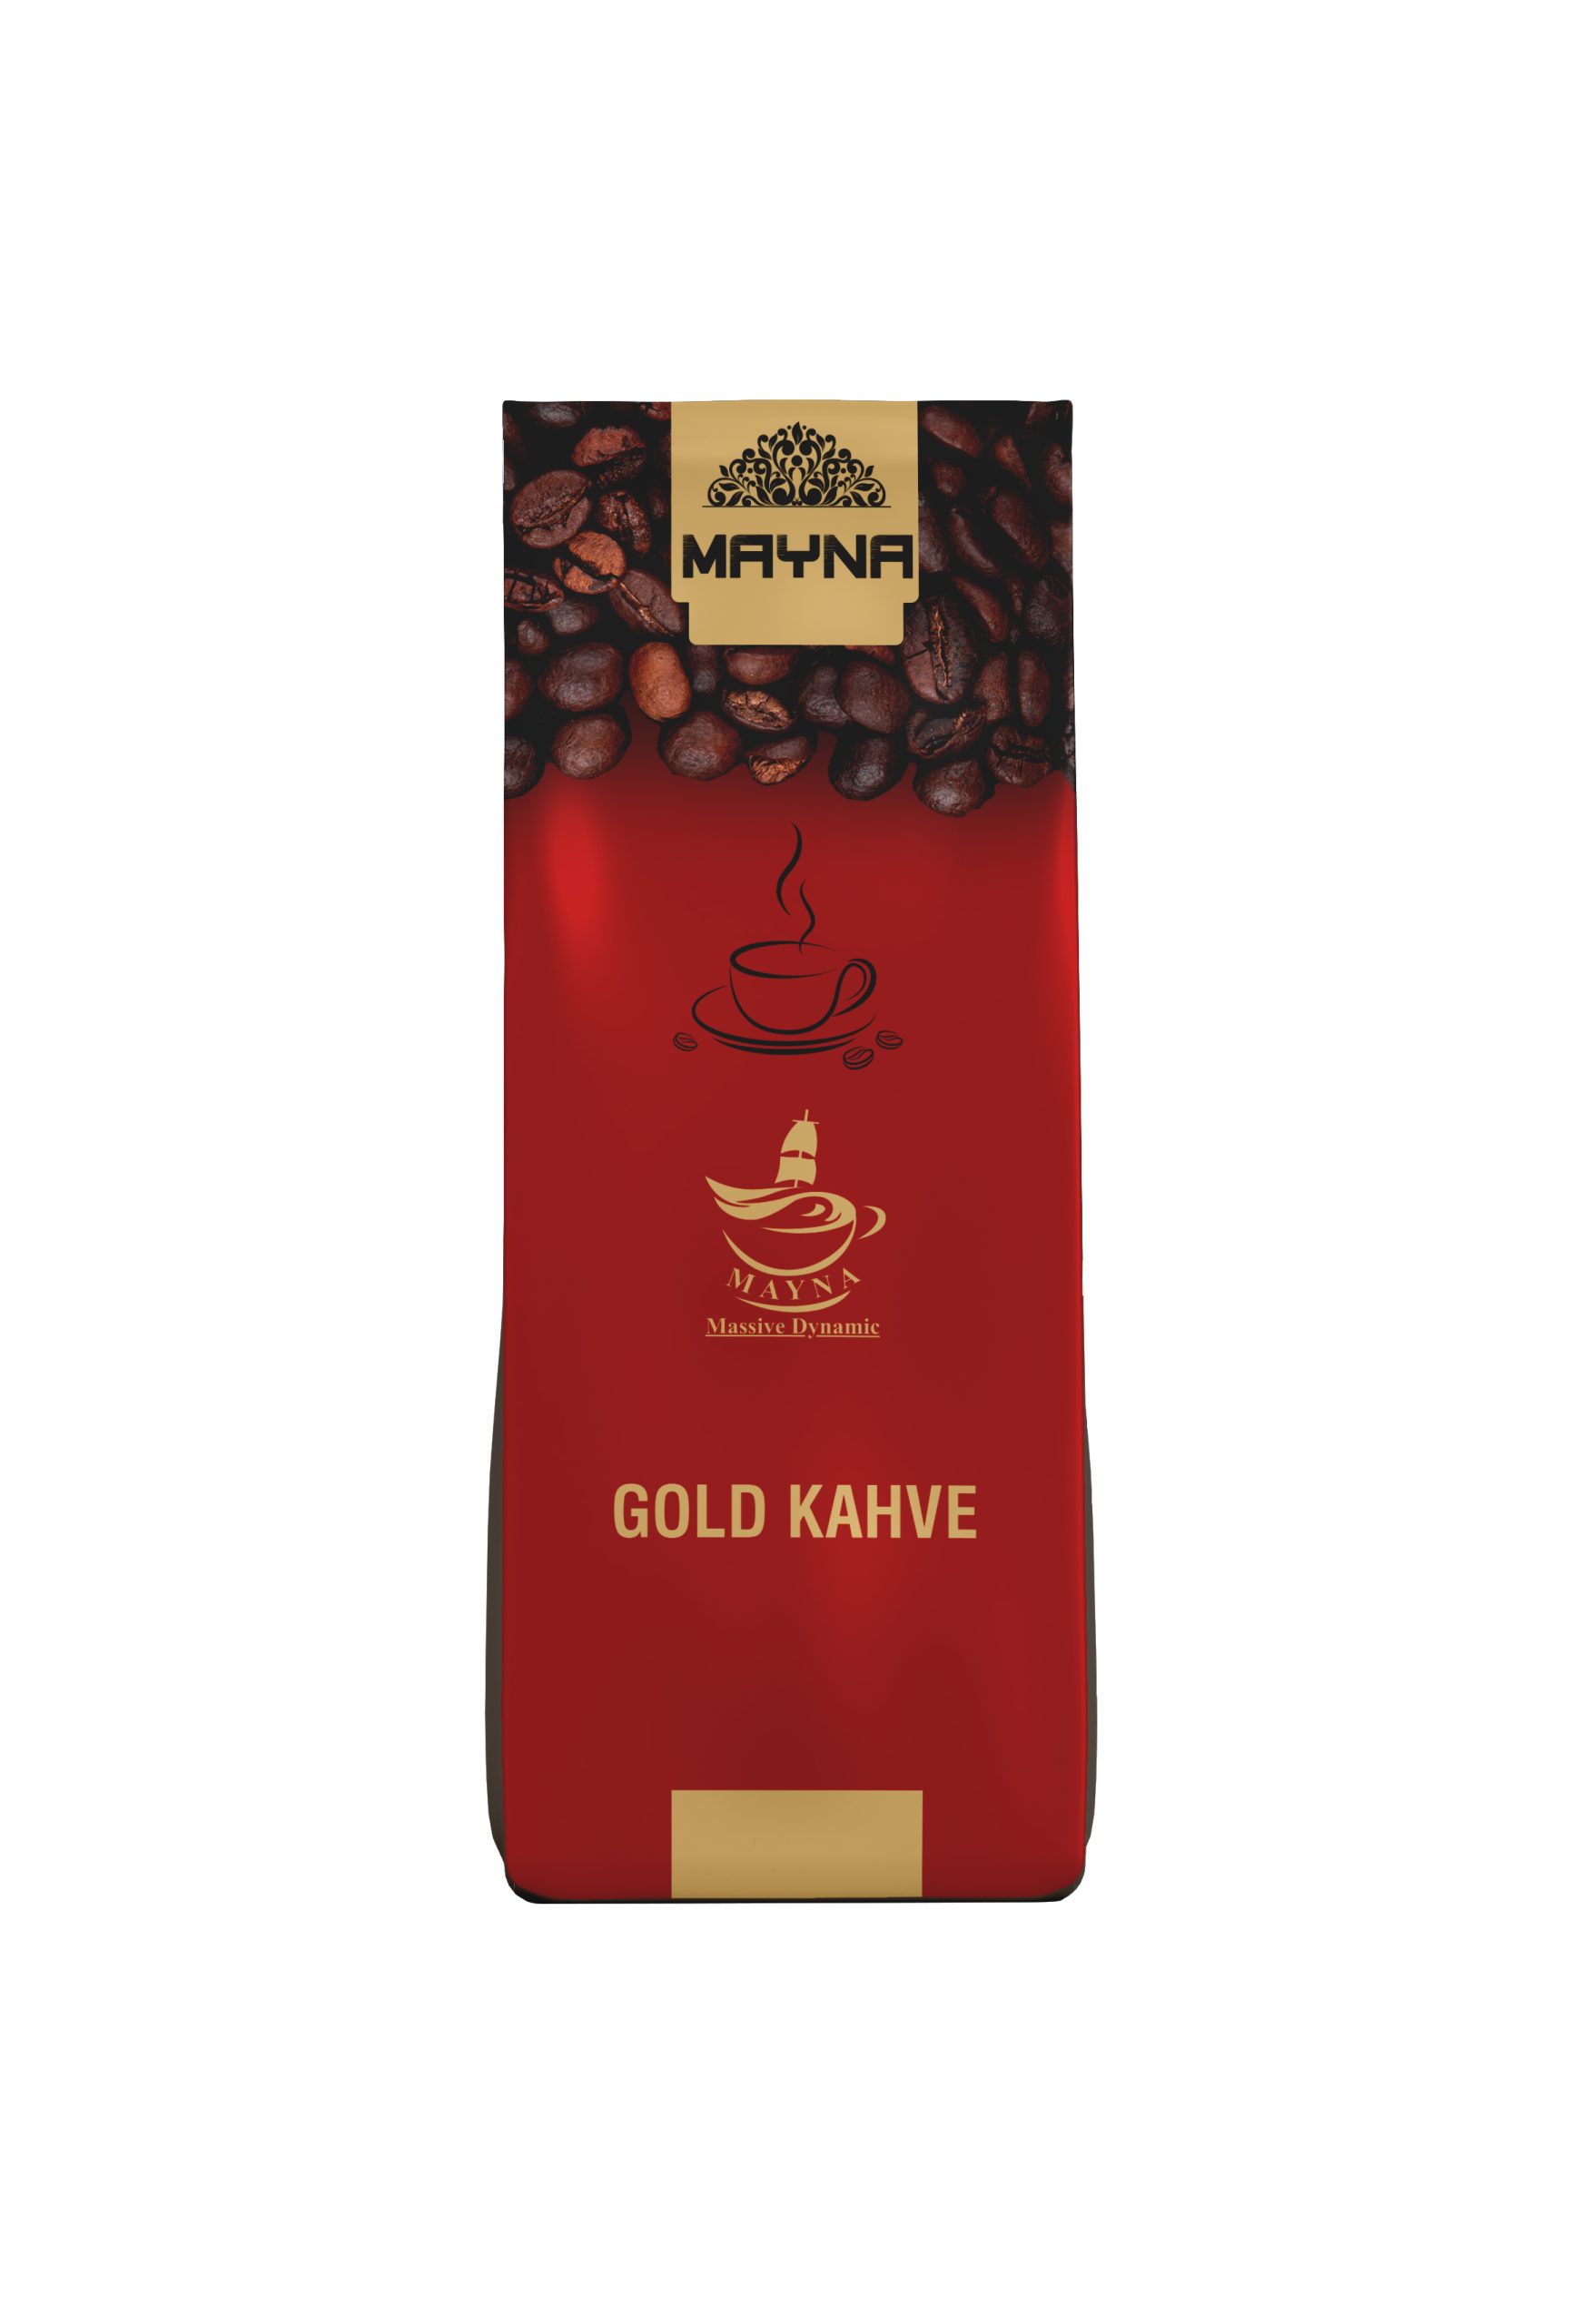 Mayna Gold Kahve